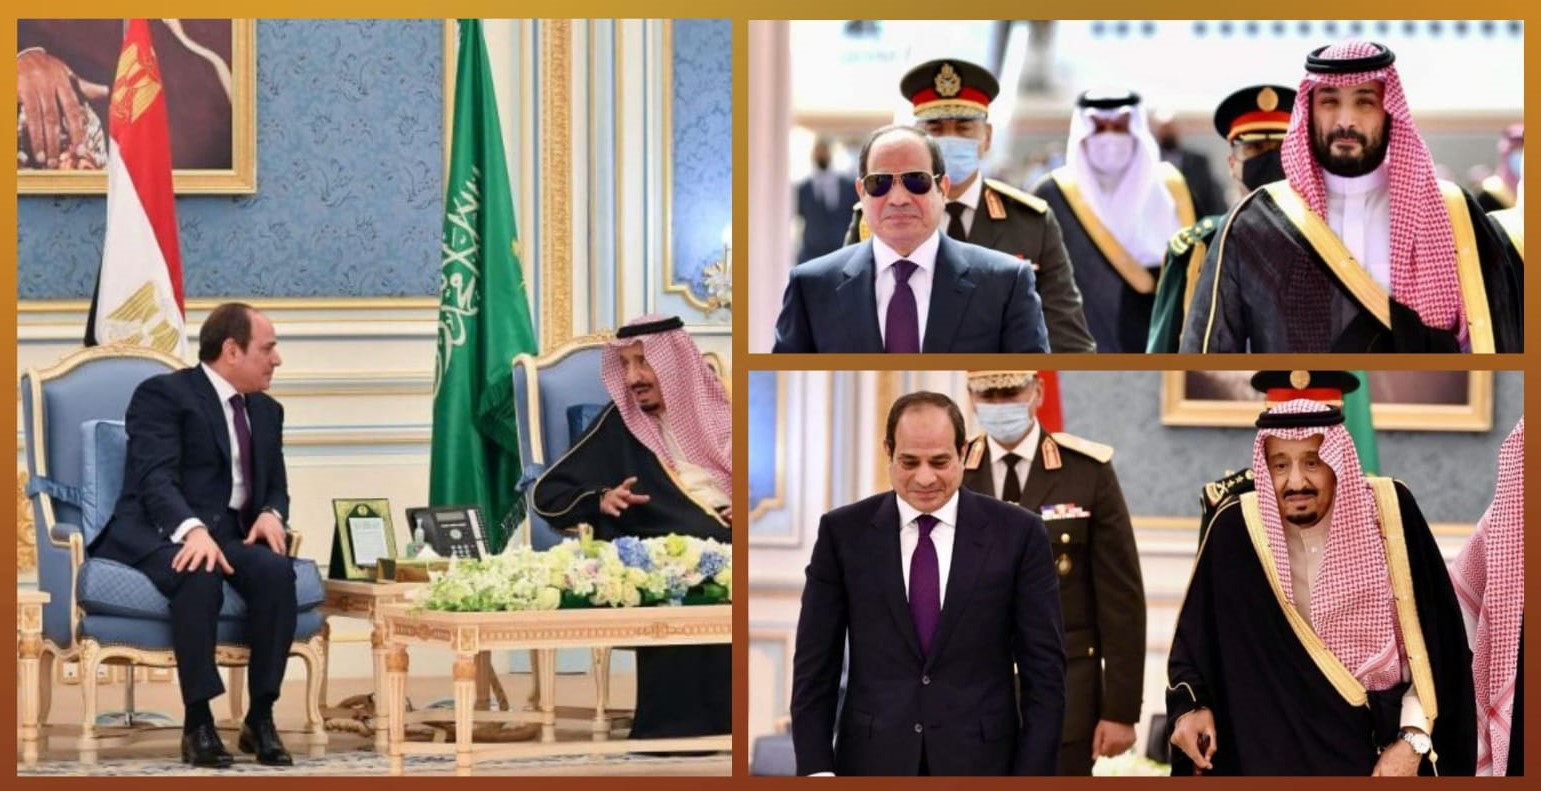 رسائل واضحة من السعودية ومصر للنظام العسكري الجزائري المنبوذ حول قضايا الأمة العربية